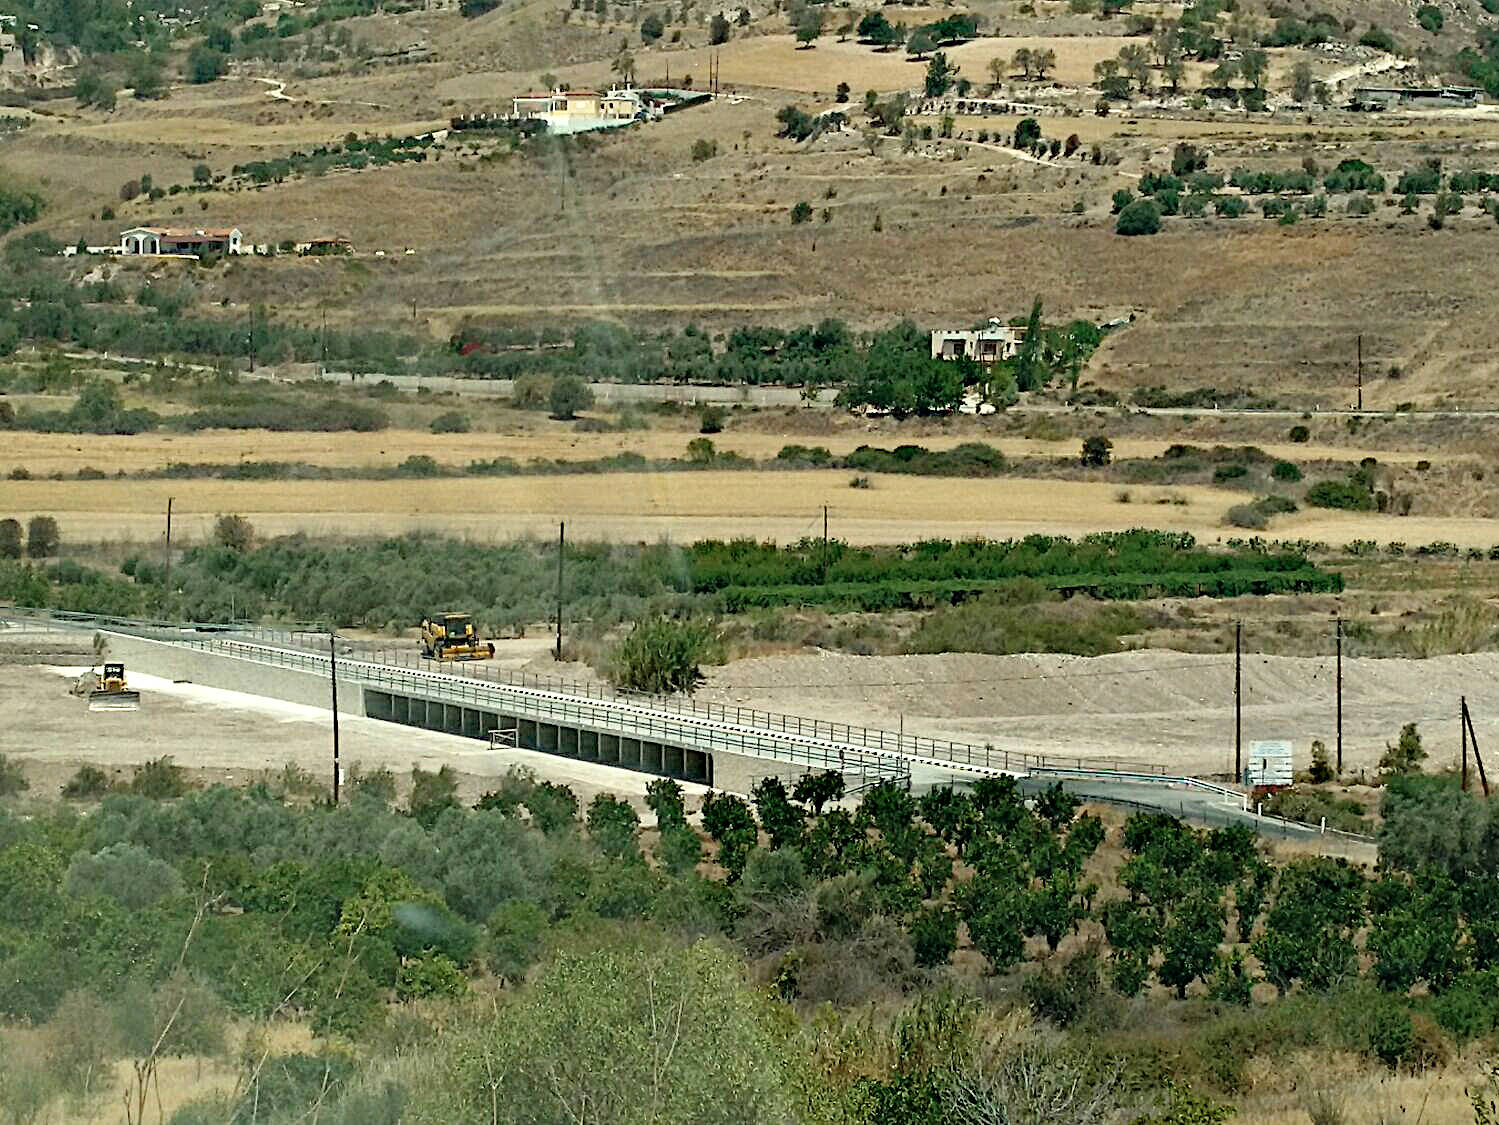 birds-eye view of highway bridge between farms